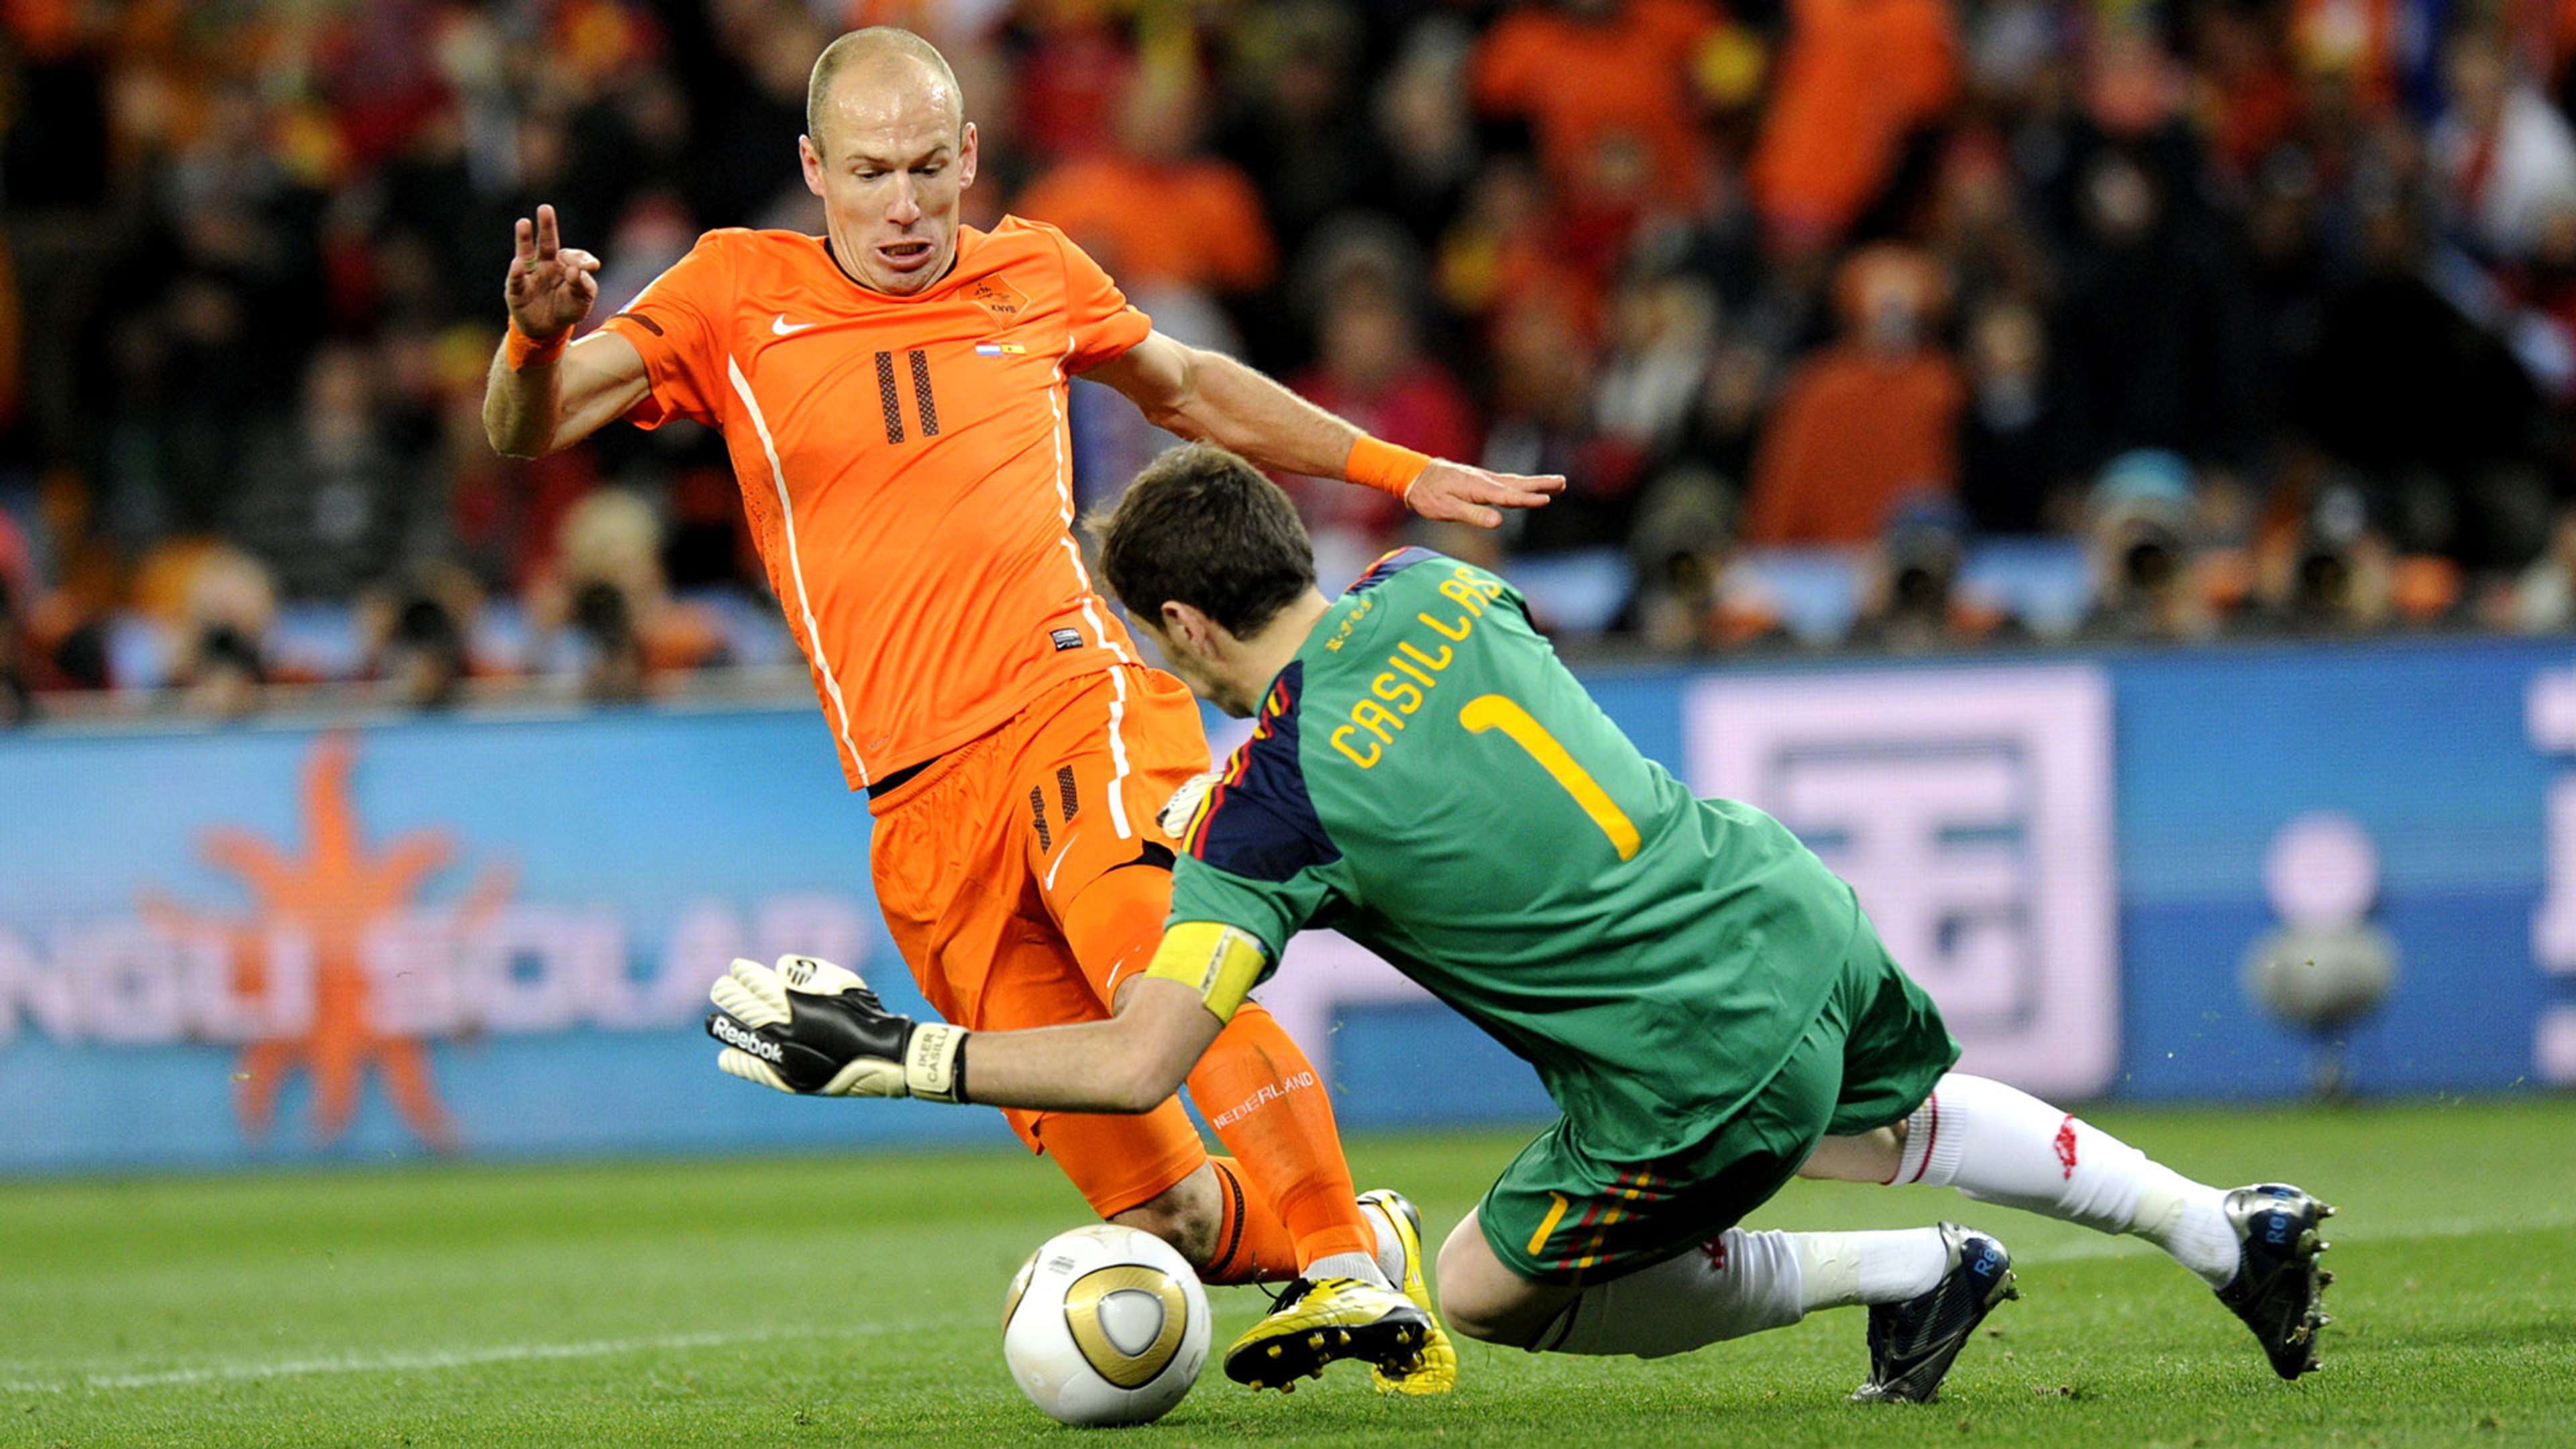 Iker Casillas Arjen Robben Spain Netherlands 2010 World Cup final